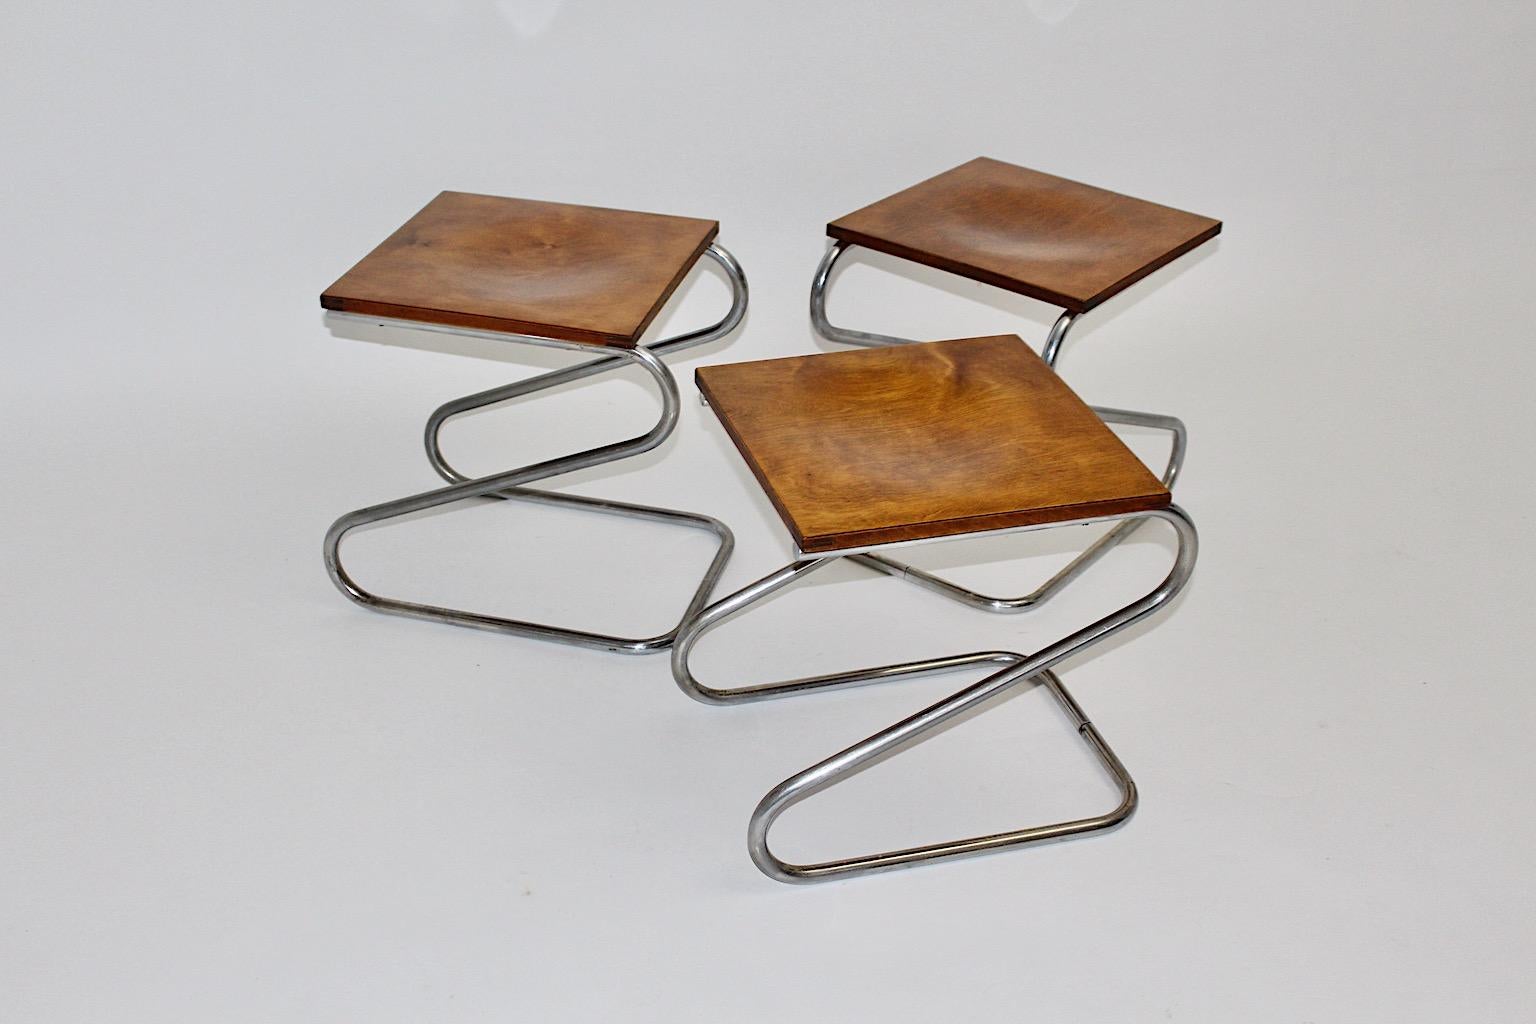 Art Deco Bauhaus-Ära Vintage drei verchromten Stahl Hocker, die entworfen und hergestellt wurden 1930er Jahre, Deutschland.
Die Vintage-Hocker wurden aus gebogenem, verchromtem Stahlrohr und Sitzen aus geformtem, mit Esche furniertem Sperrholz